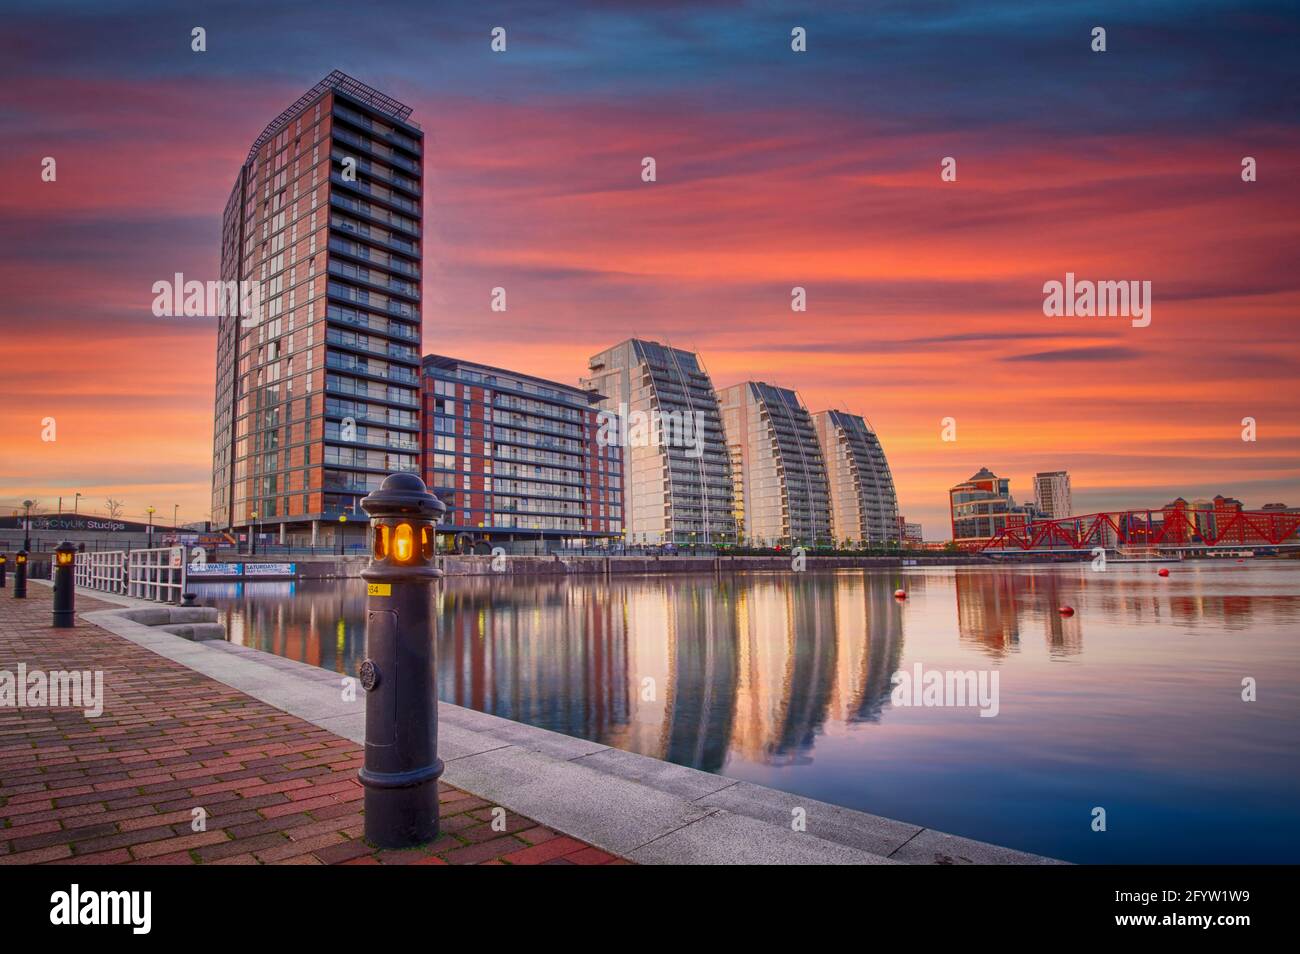 Le soleil se couche sur les bâtiments NV et l'un des quais de Salford Quays, Salford, Lancashire, Royaume-Uni Banque D'Images